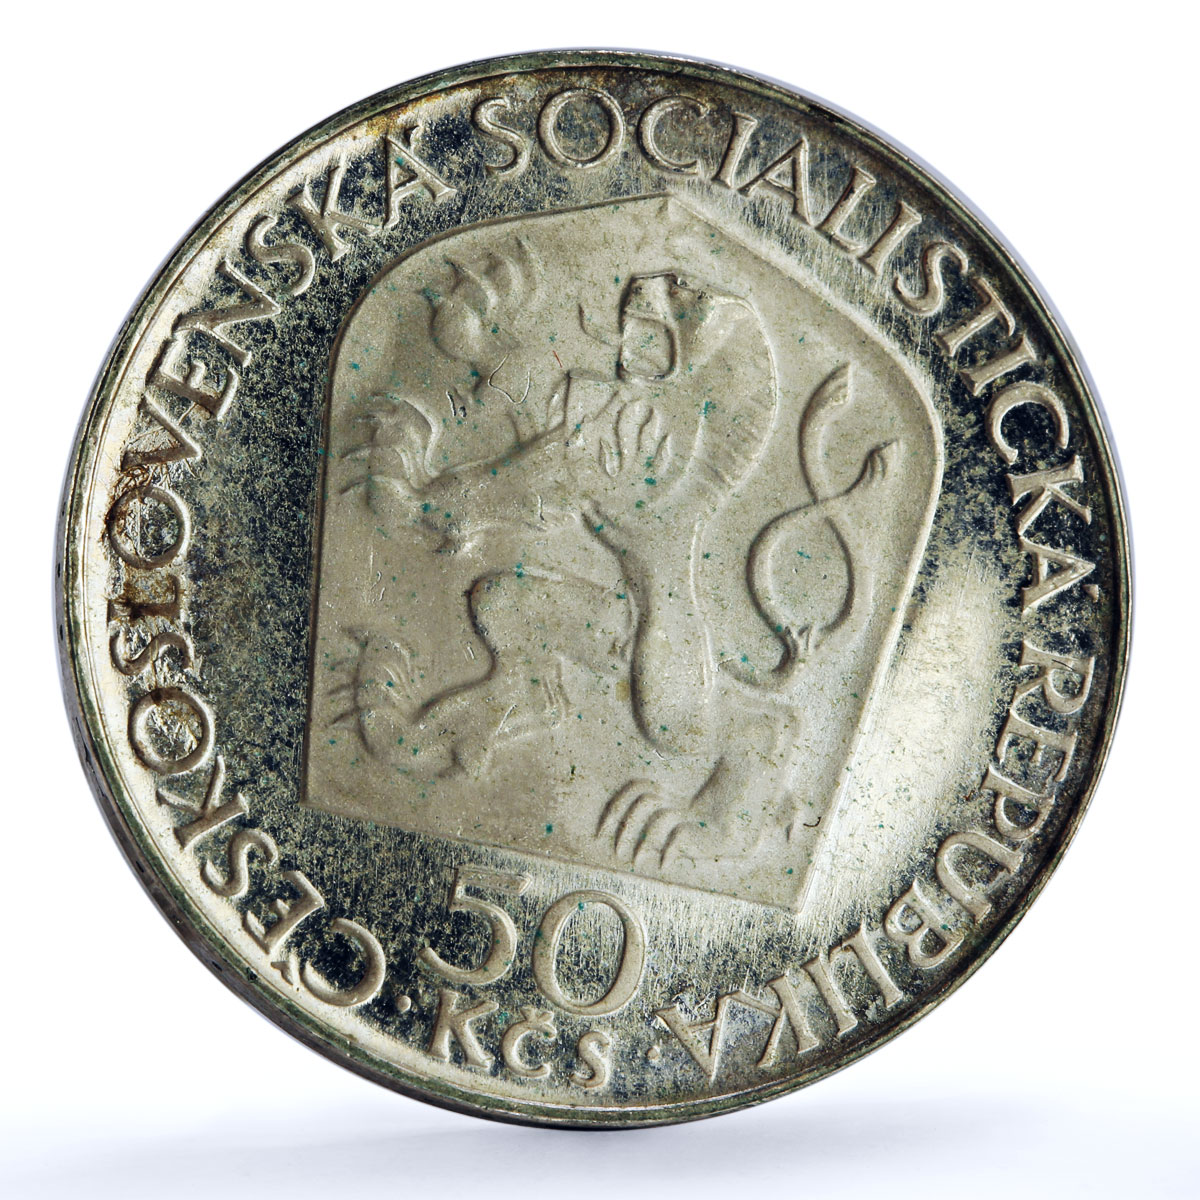 Czechoslovakia 50 korun Revolutionary Vladimir Lenin Politics proof Ag coin 1970